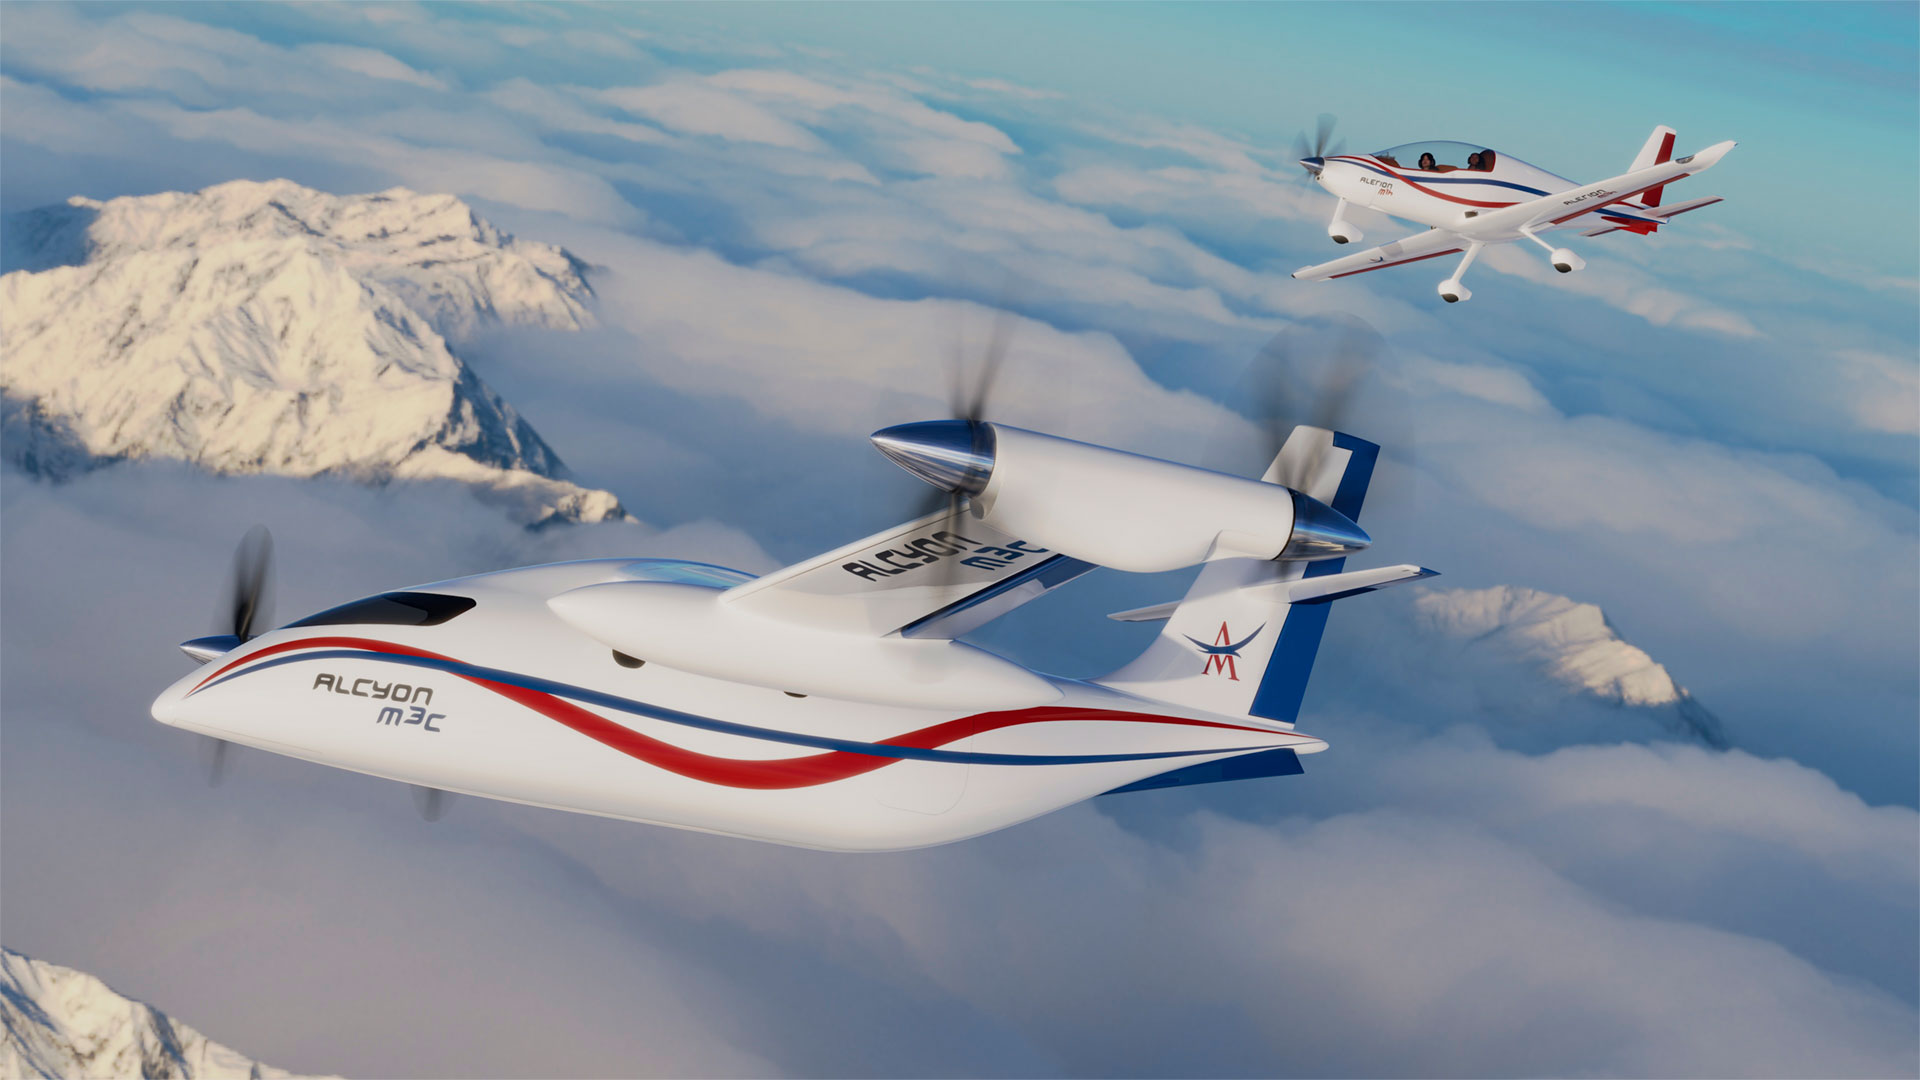 AVIONS MAUBOUSSIN Avions à propulsion hybride et hydrogène, à atterrissages et décollages courts répondant aux exigences de la mobilité moderne